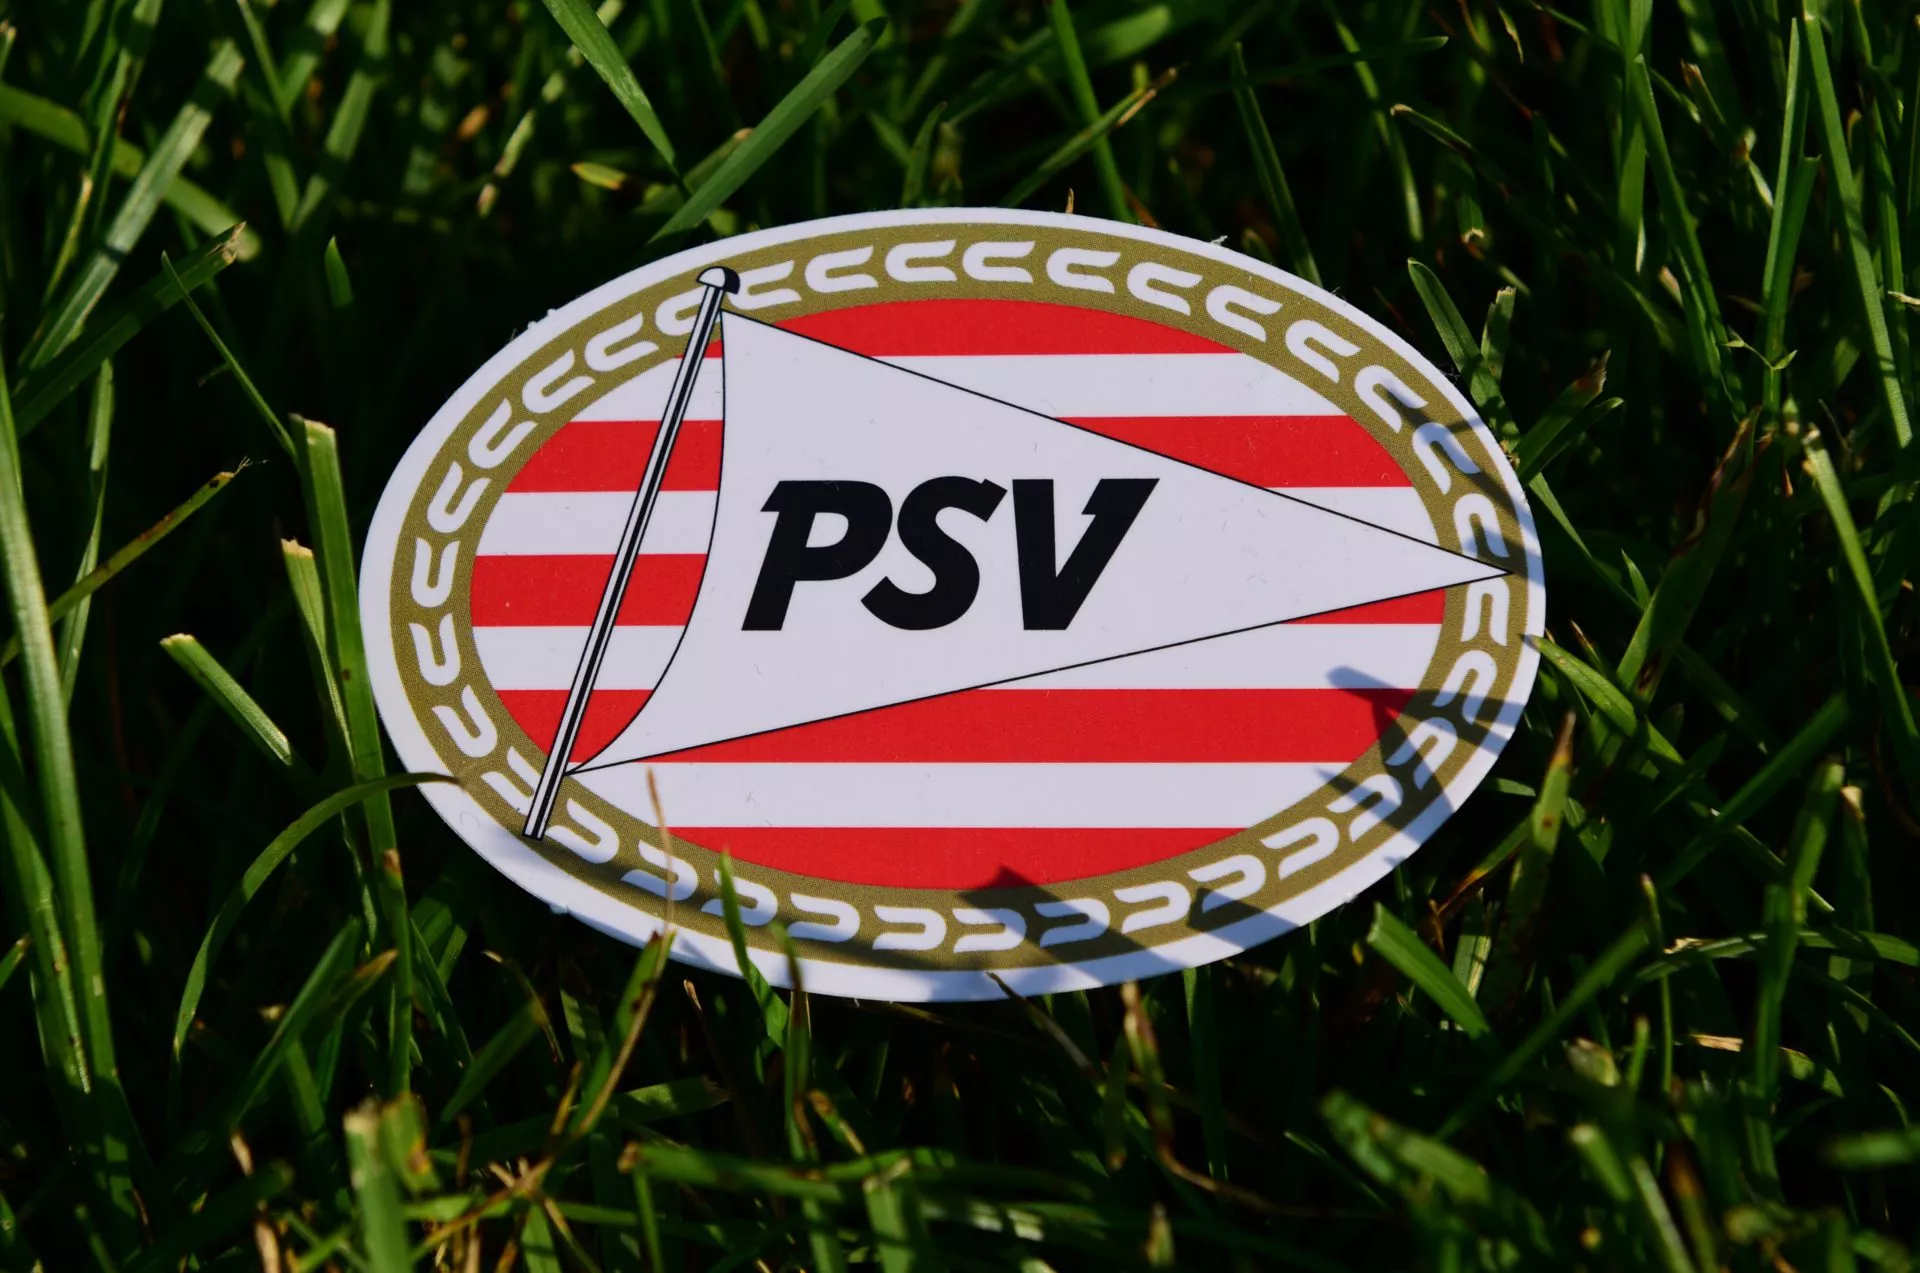 PSV is de eerste Europese voetbalclub die zich laat uitbetalen in Bitcoin